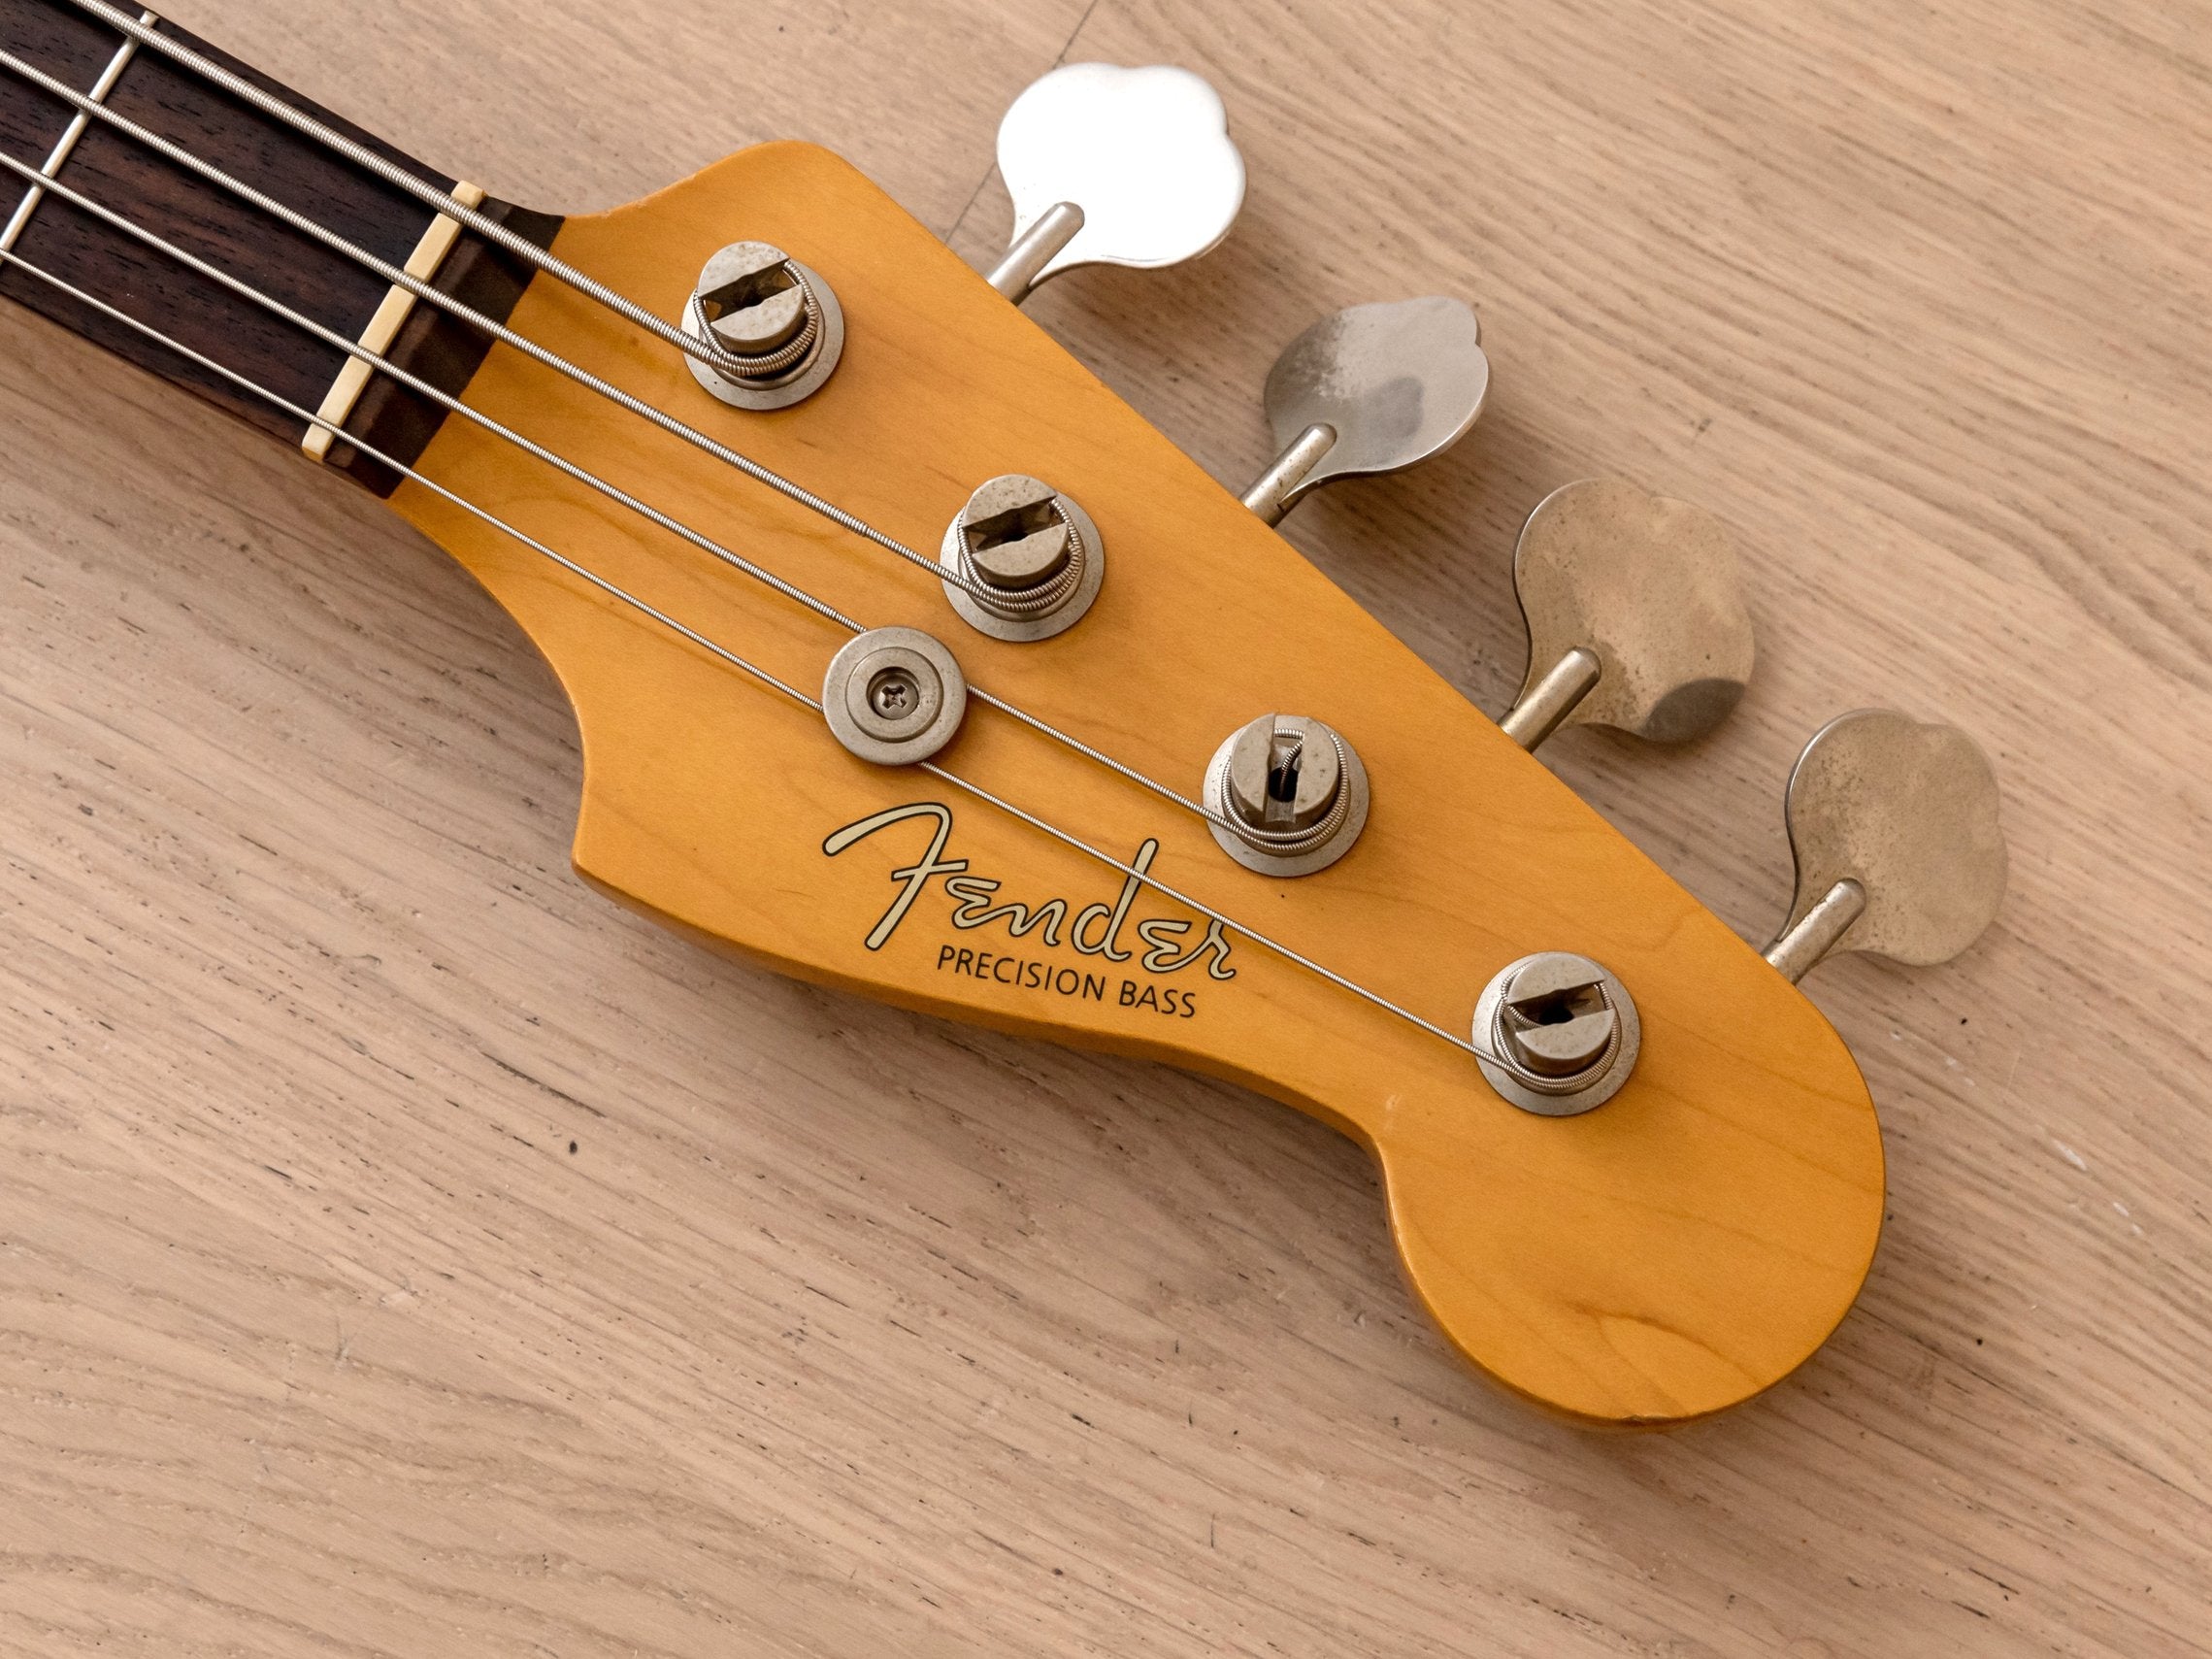 1990 Fender Precision Bass '62 Vintage Reissue PB62-500 Sunburst, Japan MIJ Fujigen